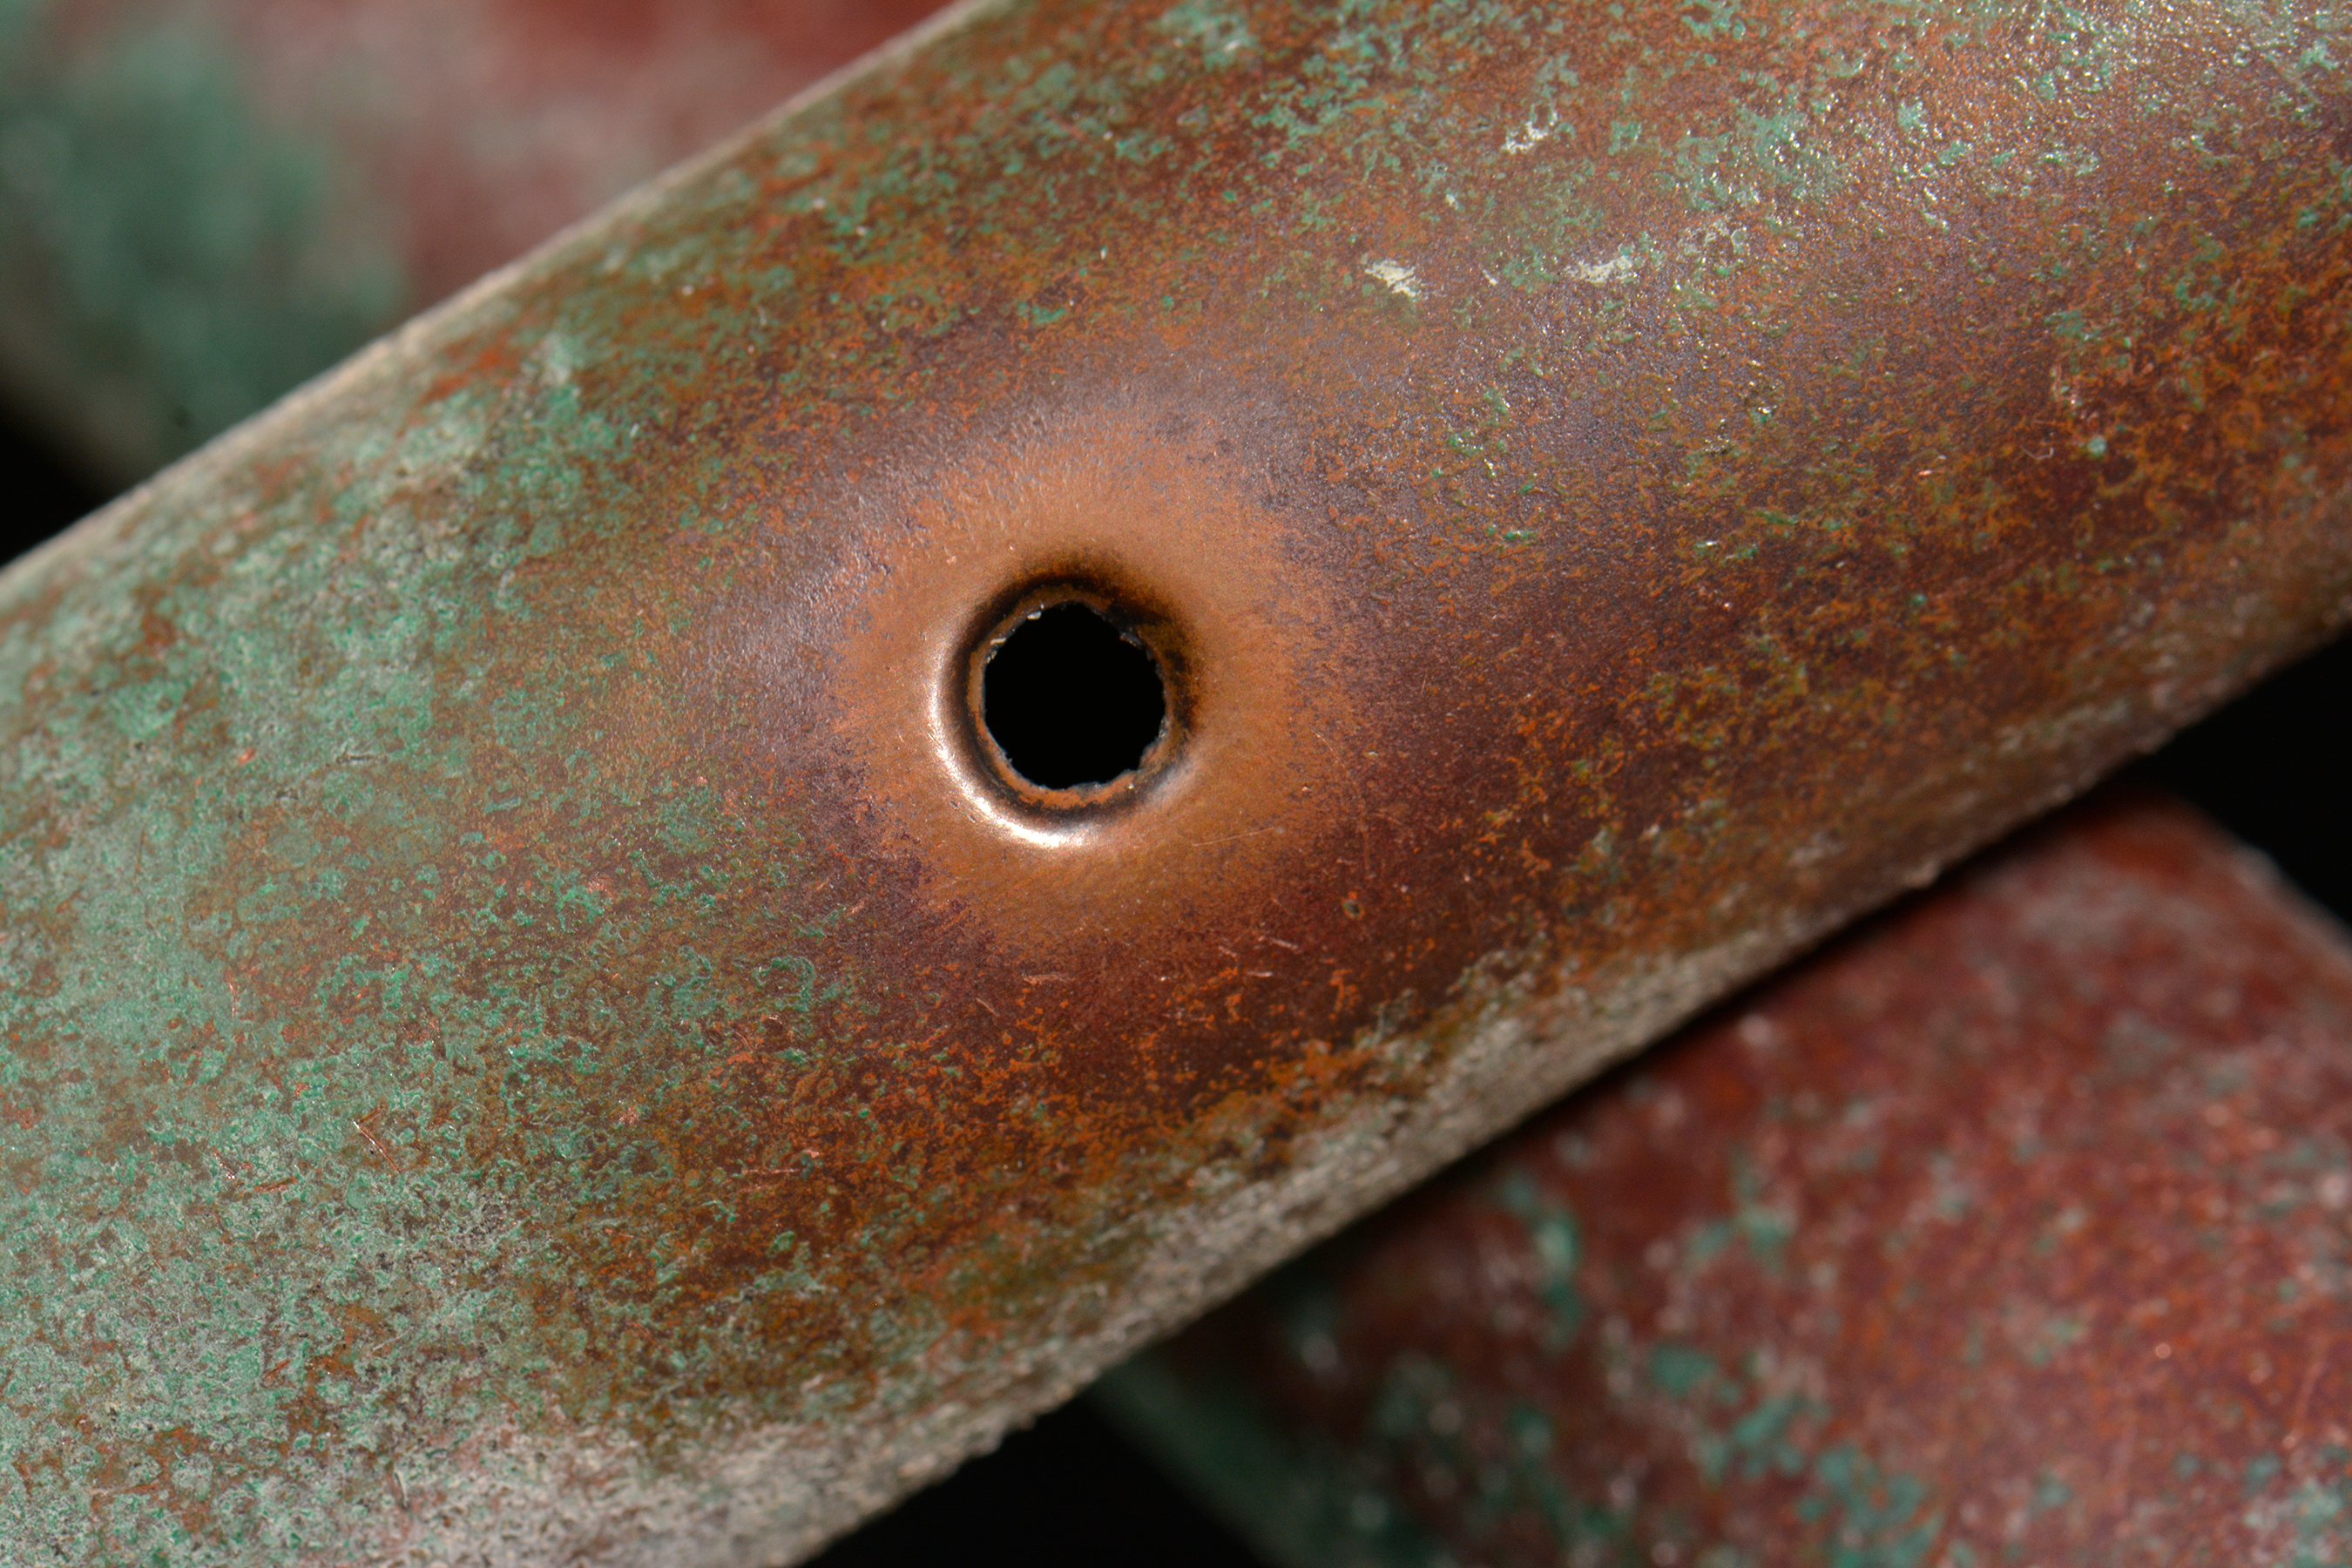 Copper Pipe Repair